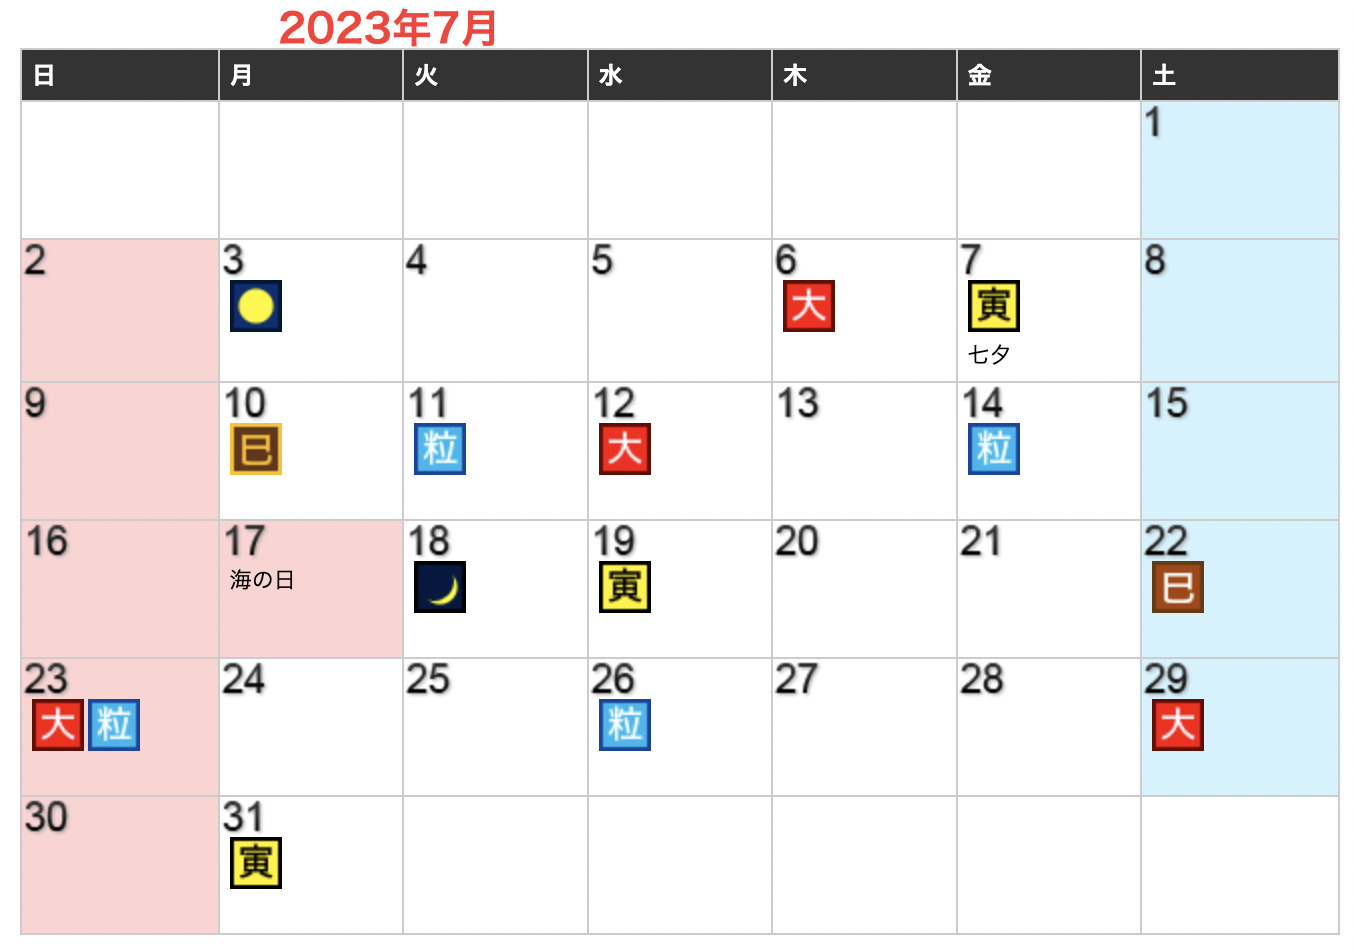 2023年07月開運日カレンダー